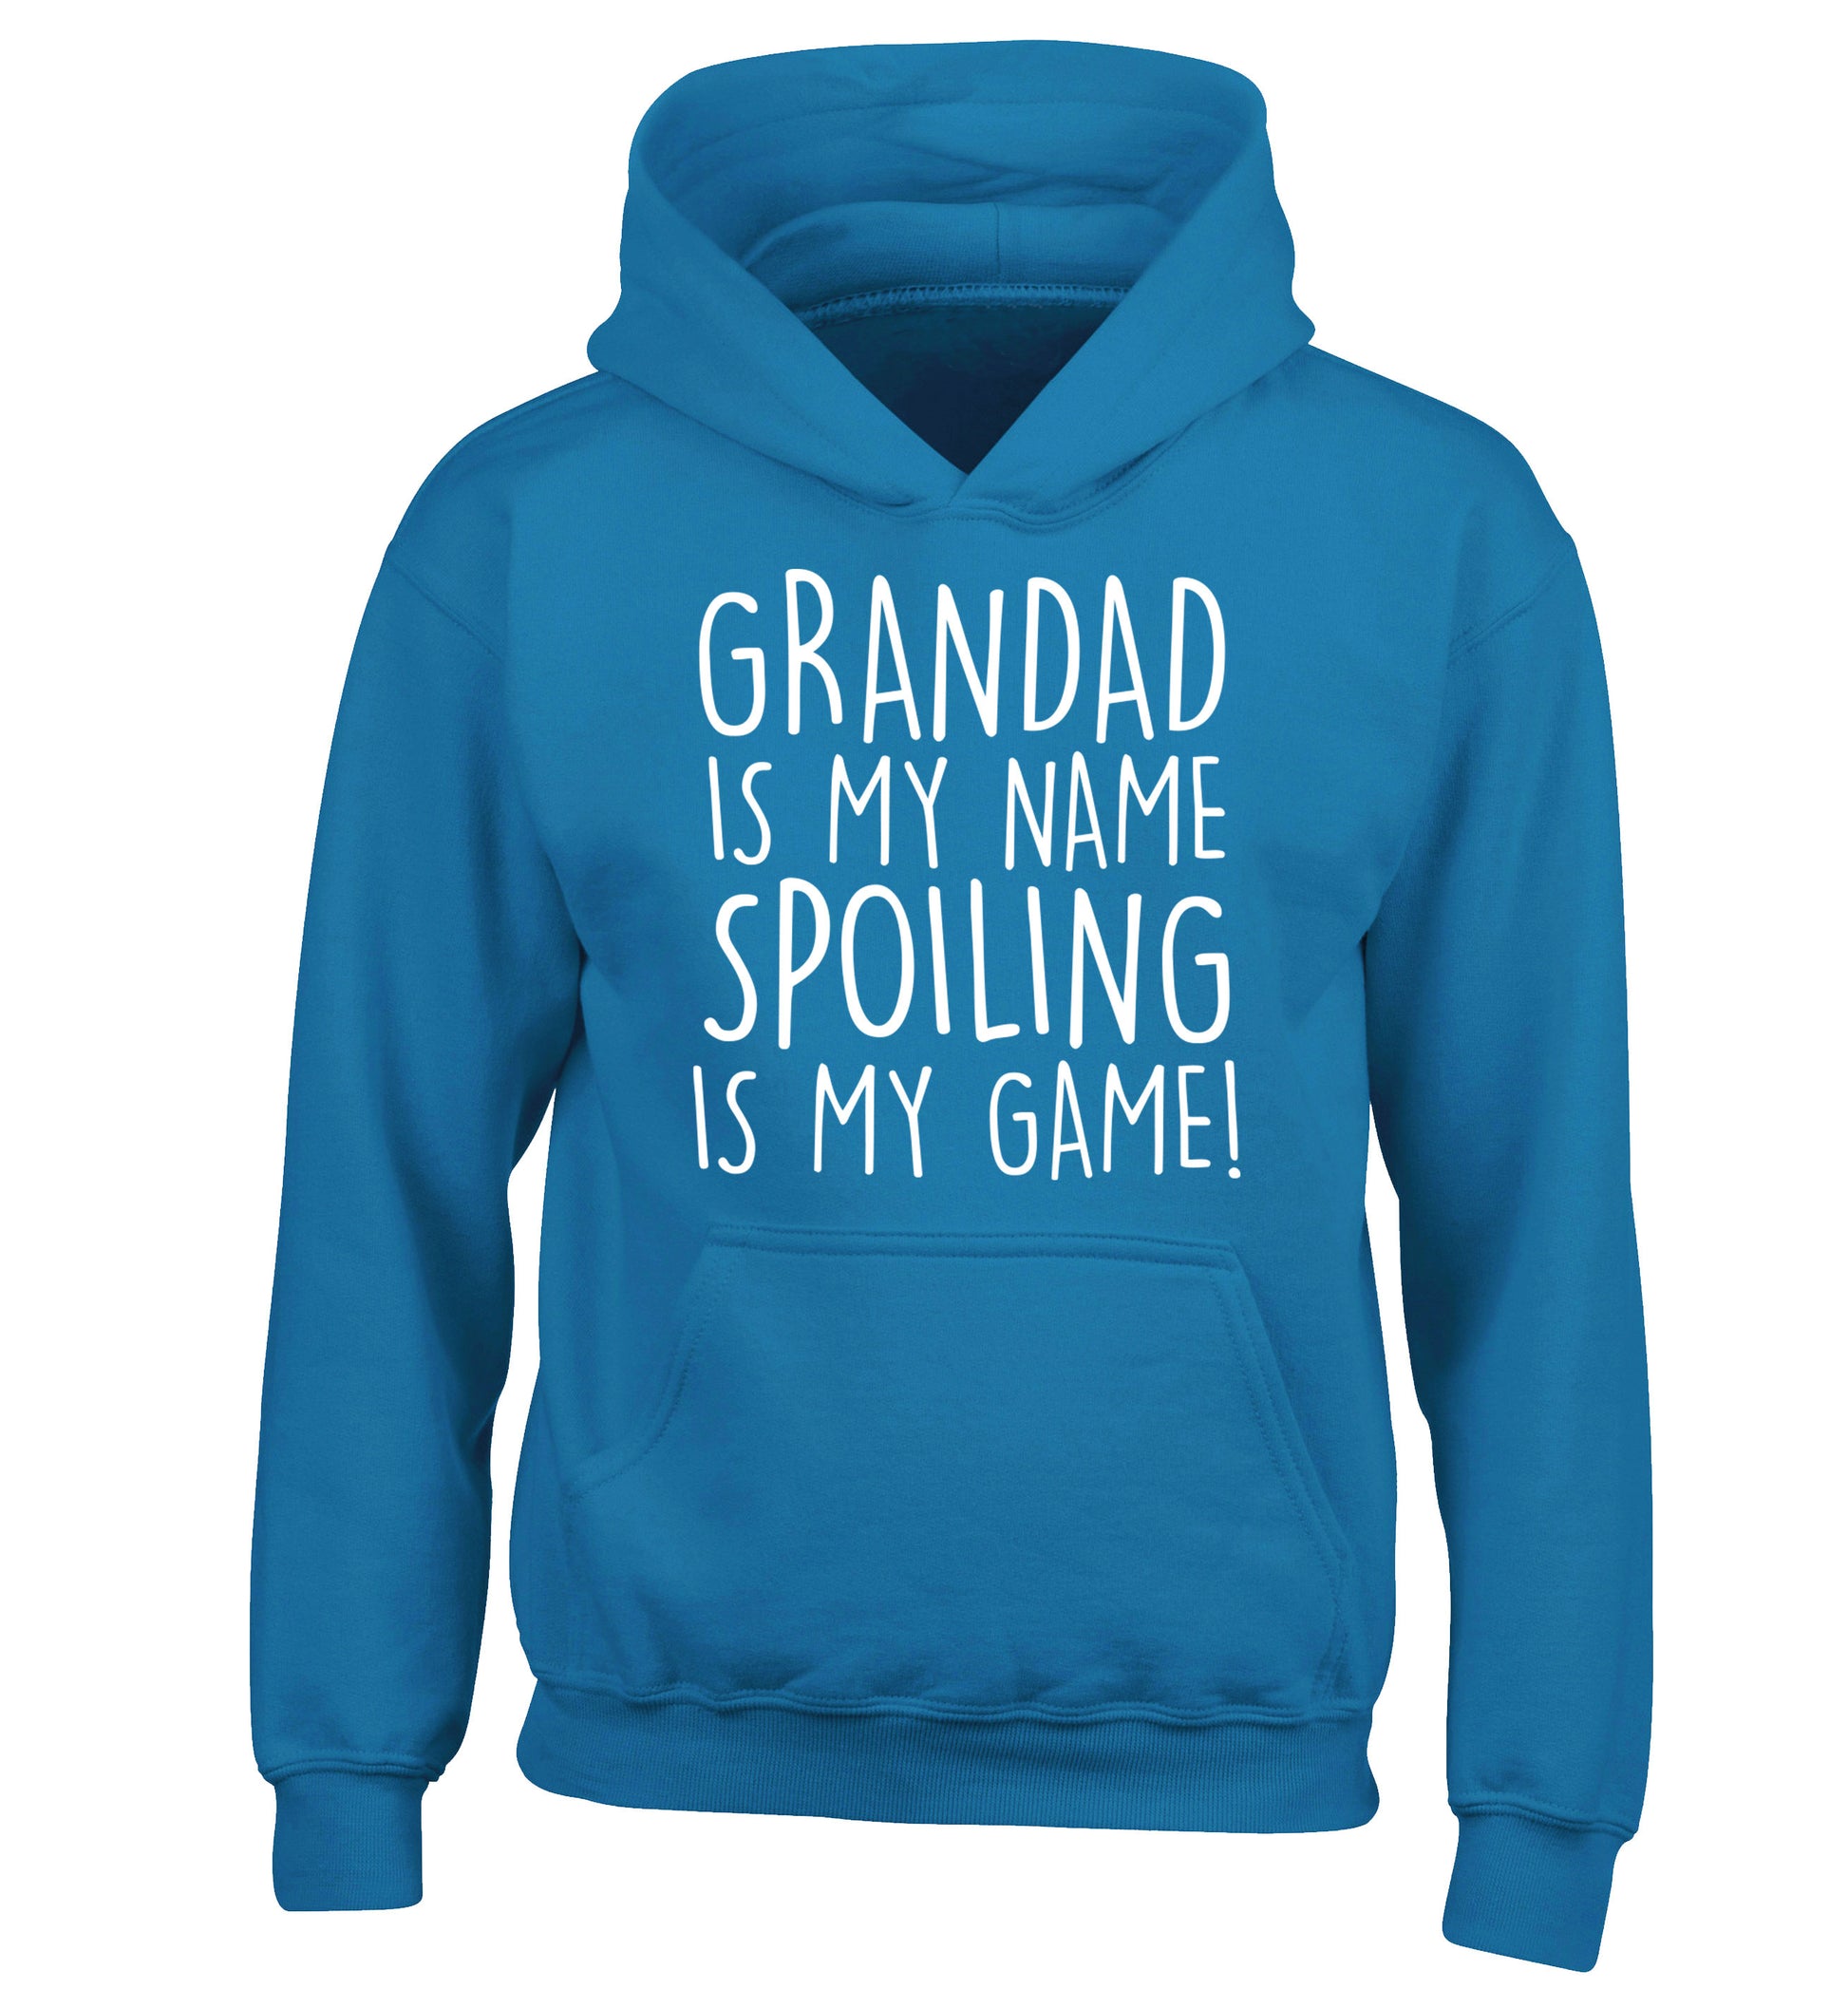 Grandad is my name, spoiling is my game children's blue hoodie 12-14 Years